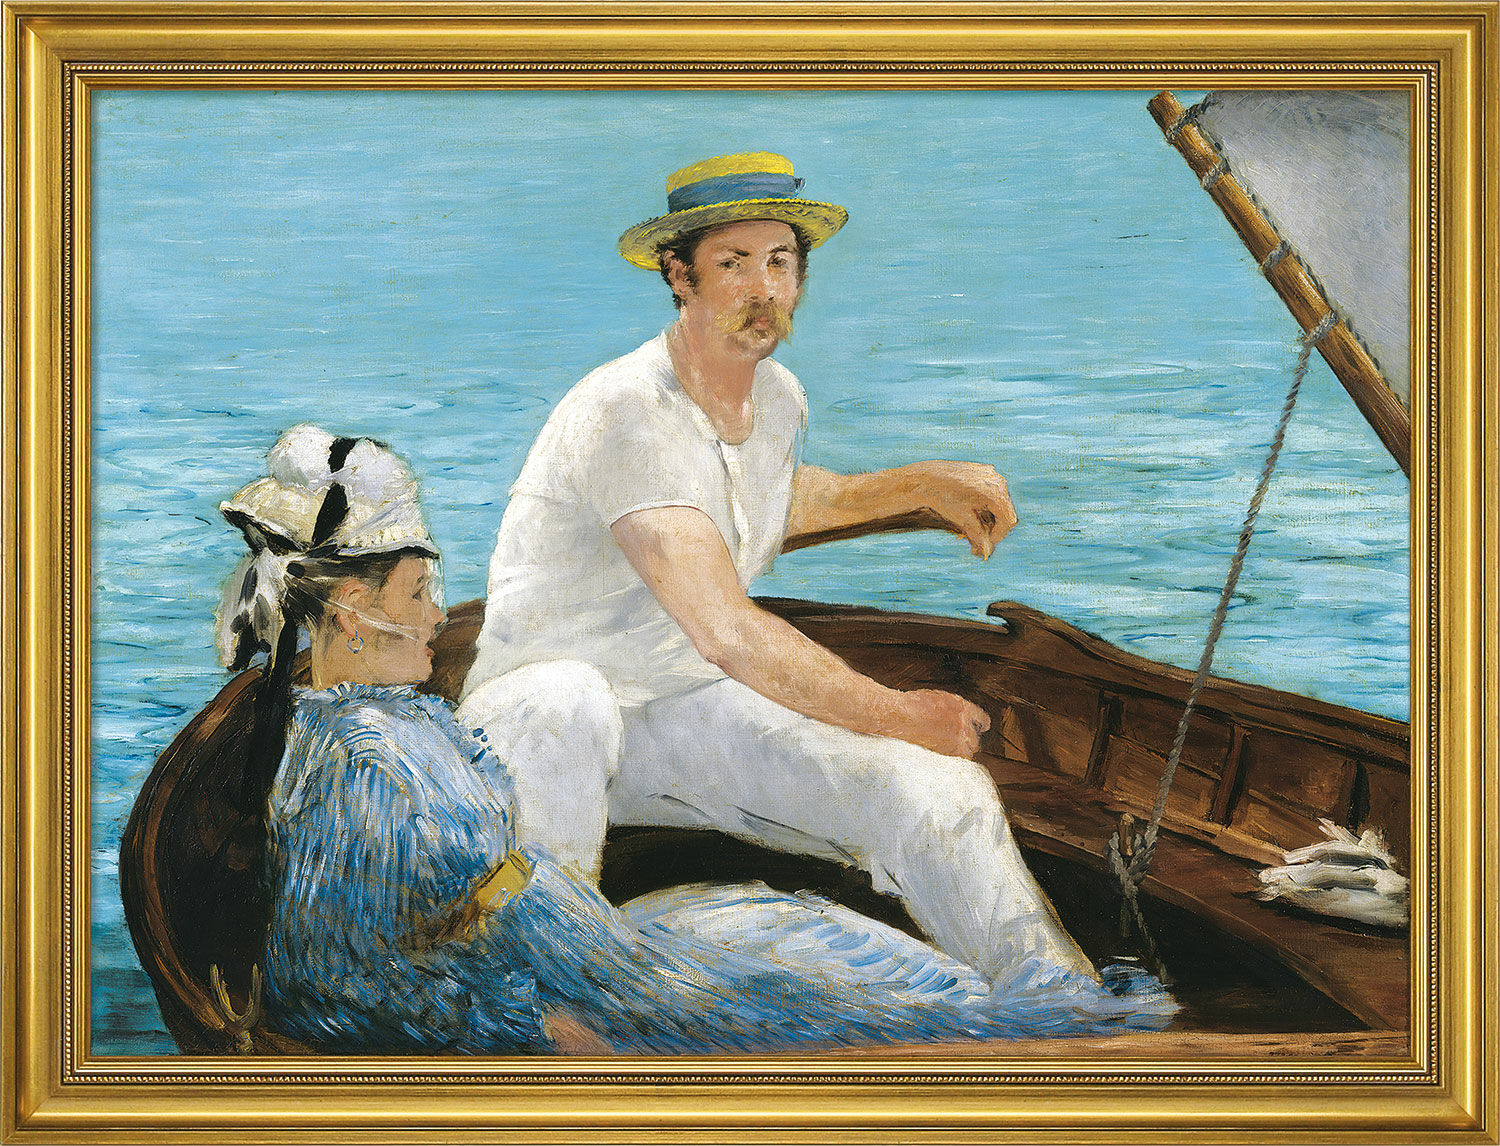 Tableau "Dans la barque" (1874), encadré von Edouard Manet